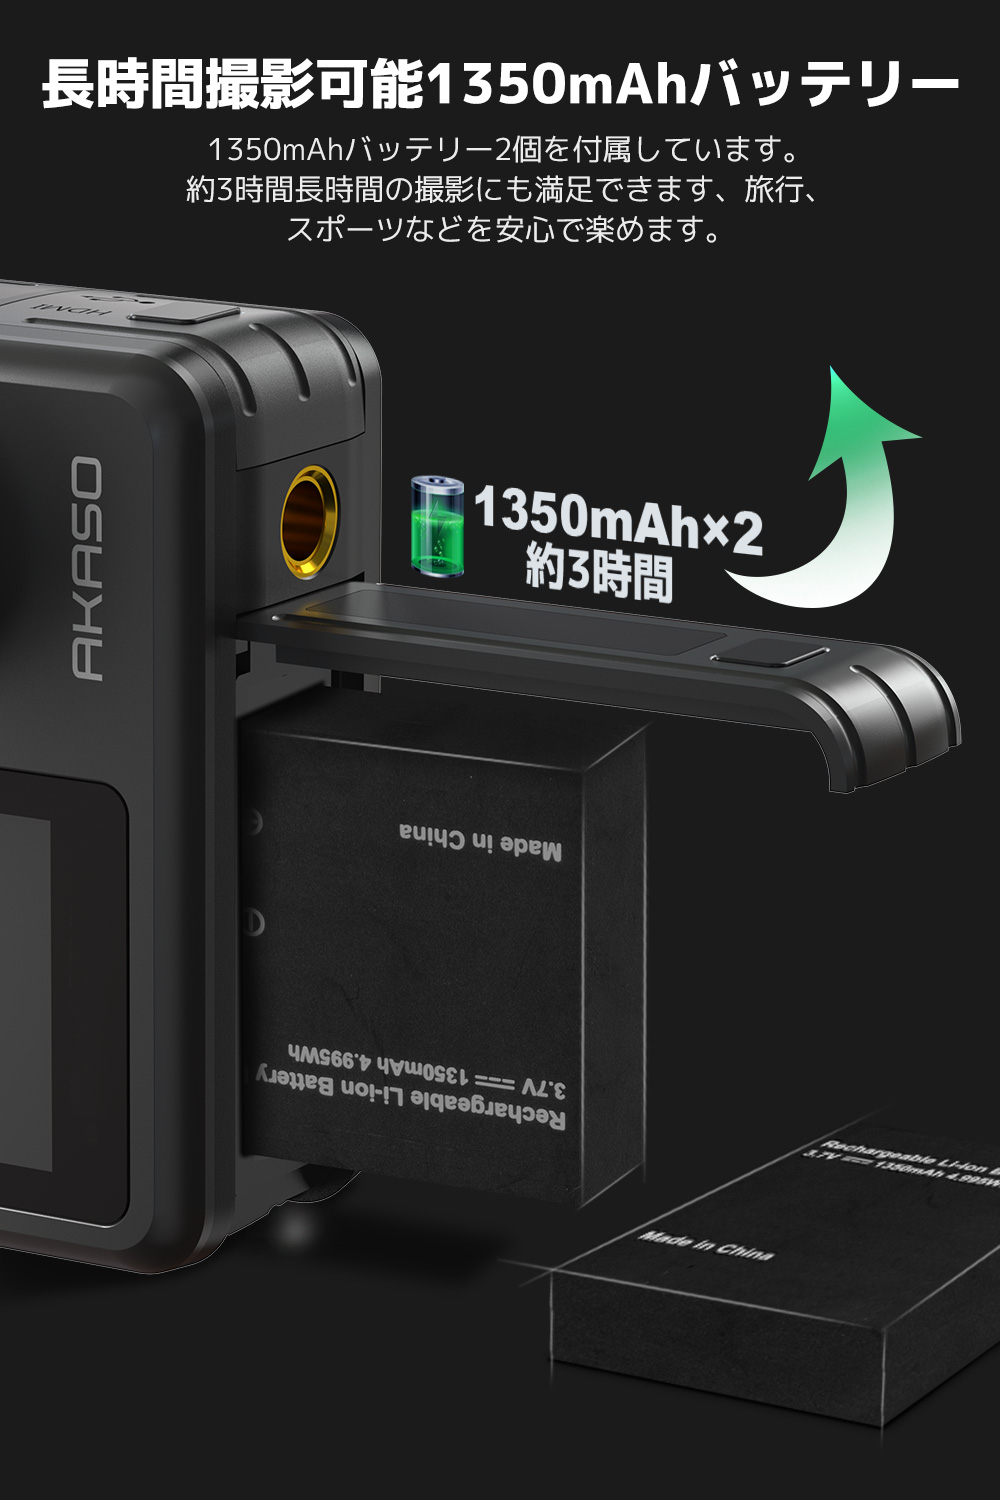  アクションカメラ 4K撮影可能  SONYセンサー WiFi搭載